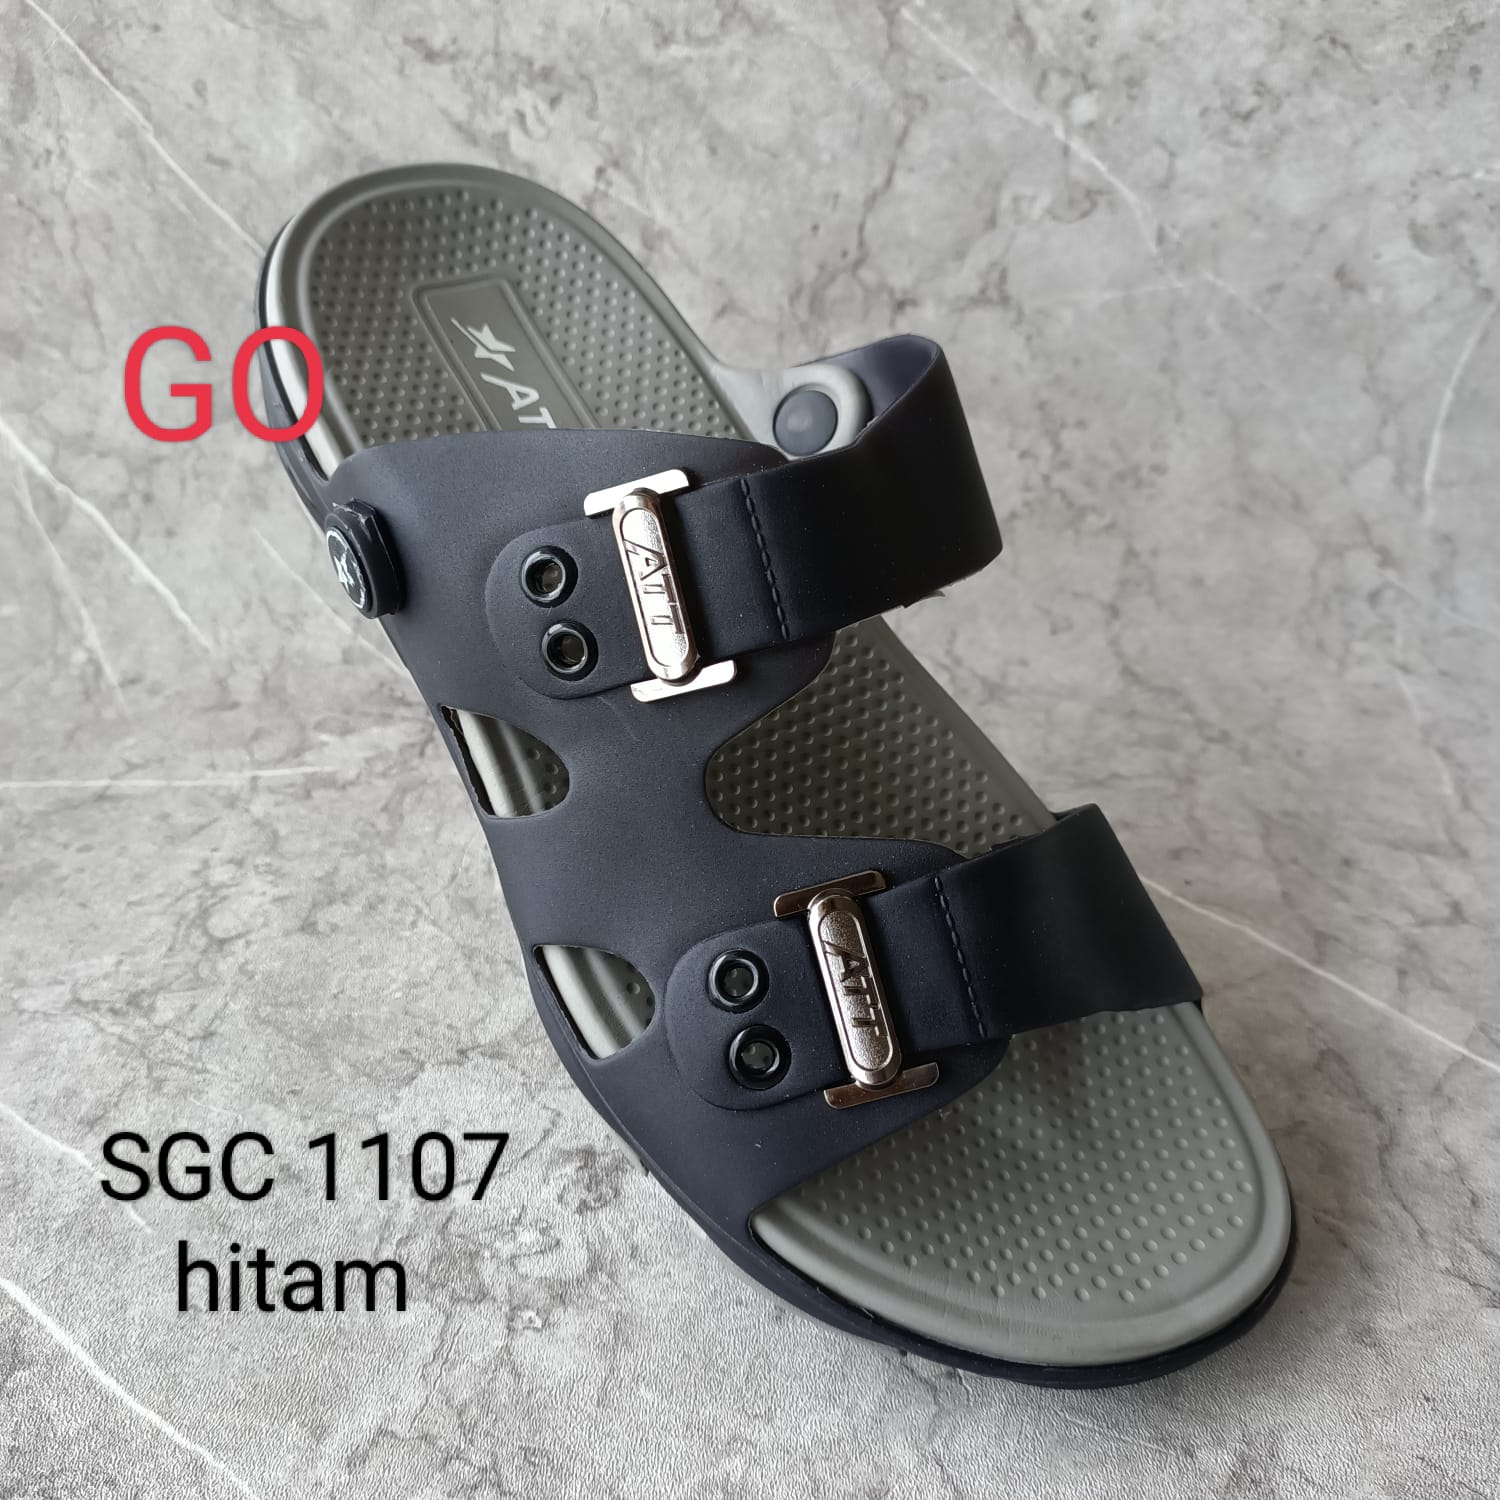 sogo ATT SGC 1107 SANDAL PRIA Sandal Selop Santai Bahan Karet Anti Air Nyaman Dipakai